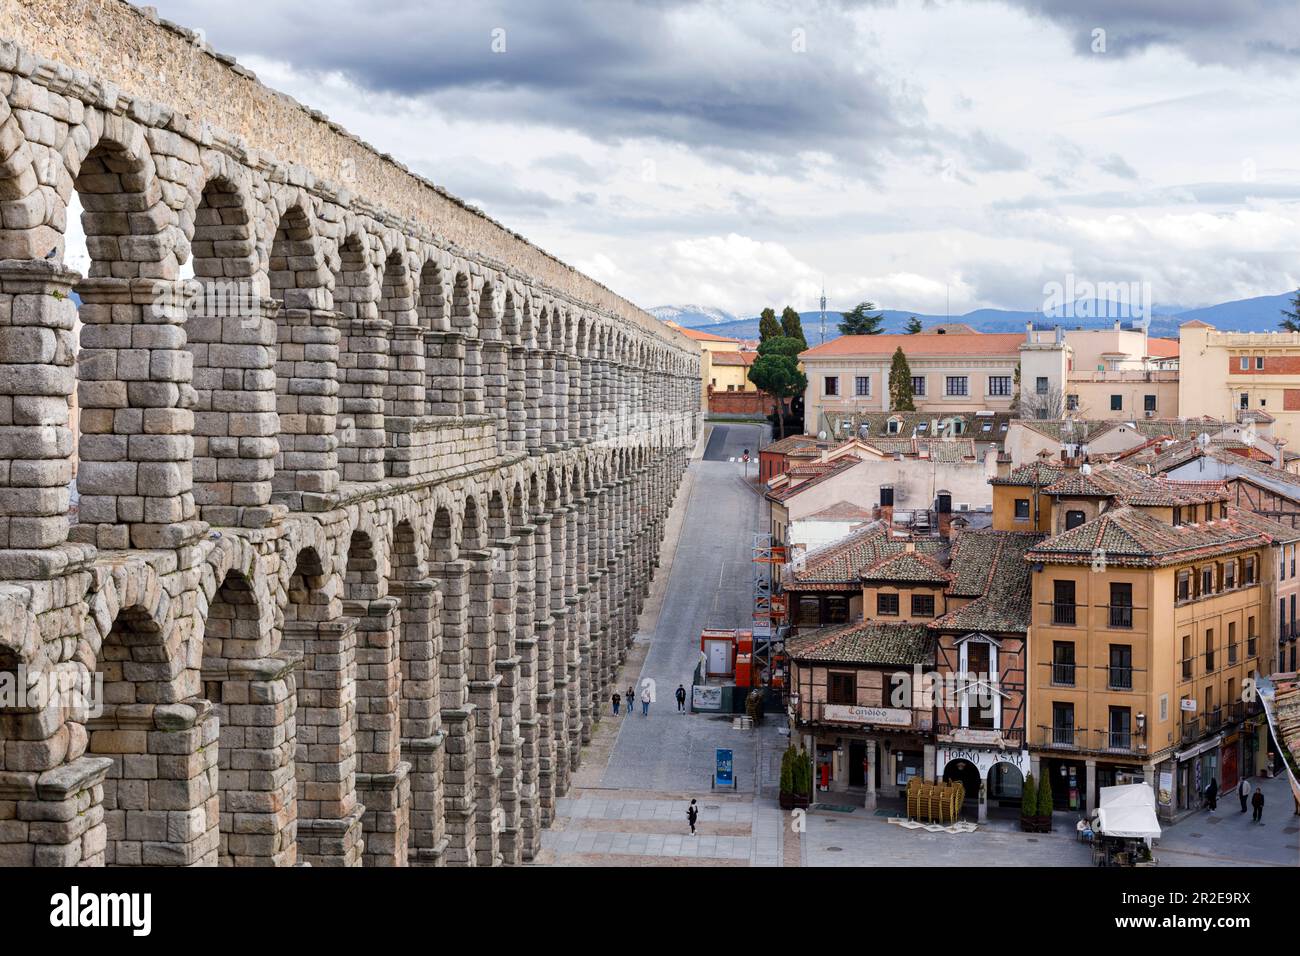 Spanien, Segovia, römische Aquädukte und Gebäude der Stadt. Stockfoto